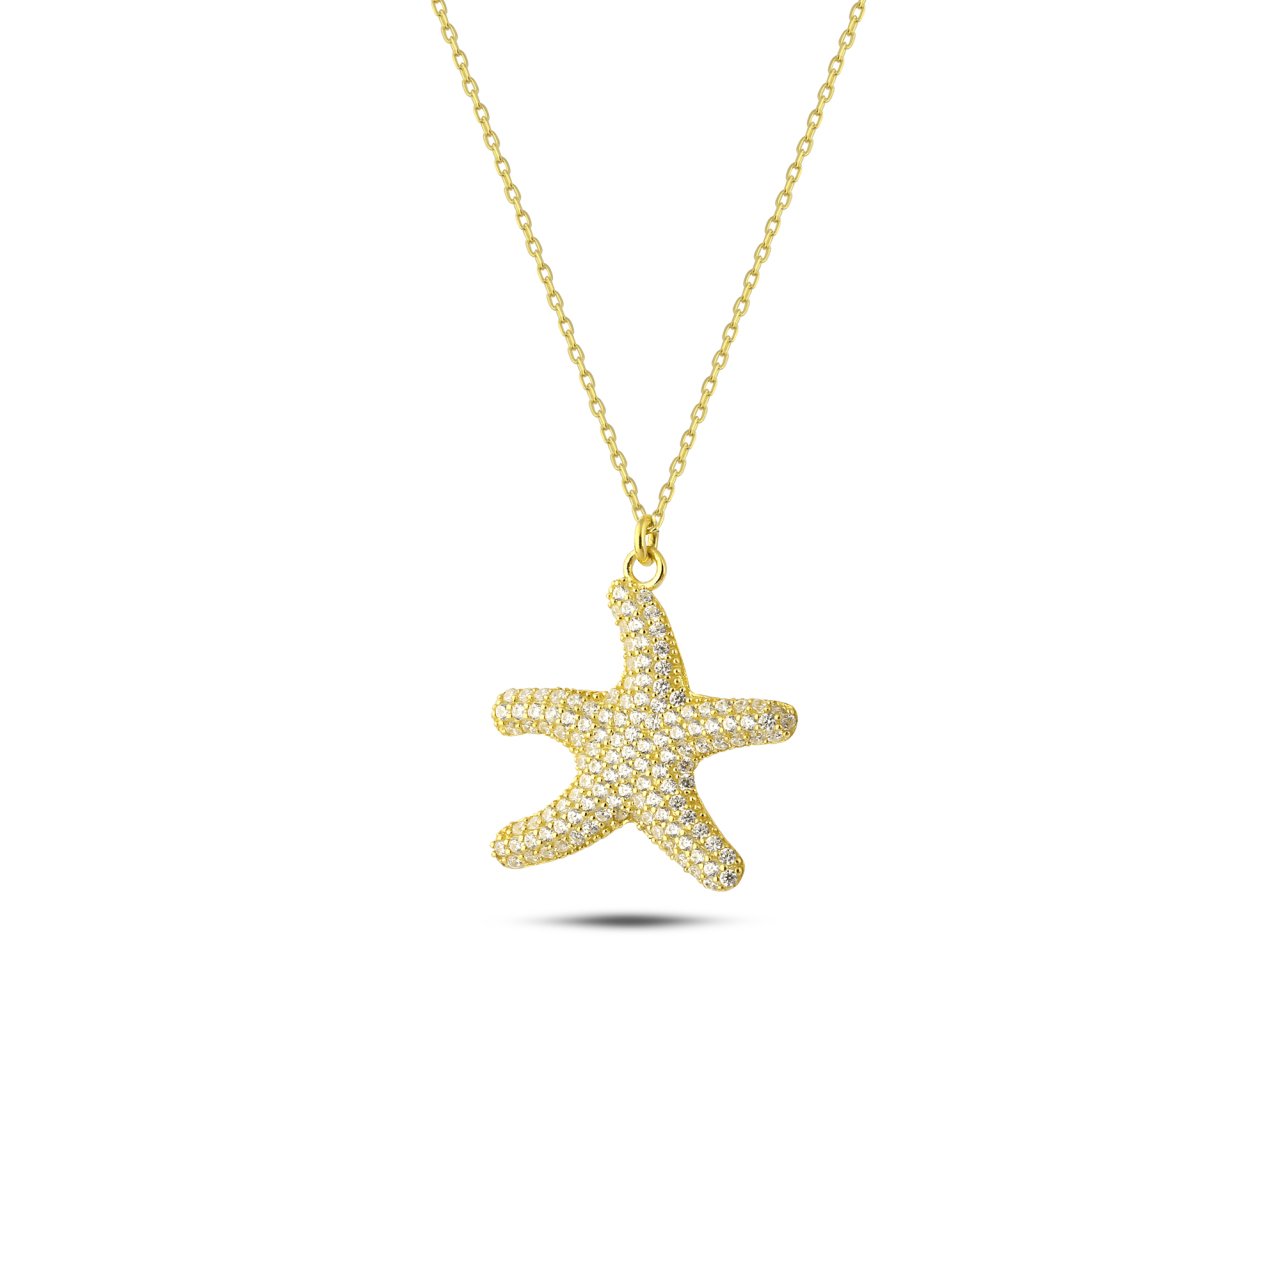 Mini Sea Star Necklace